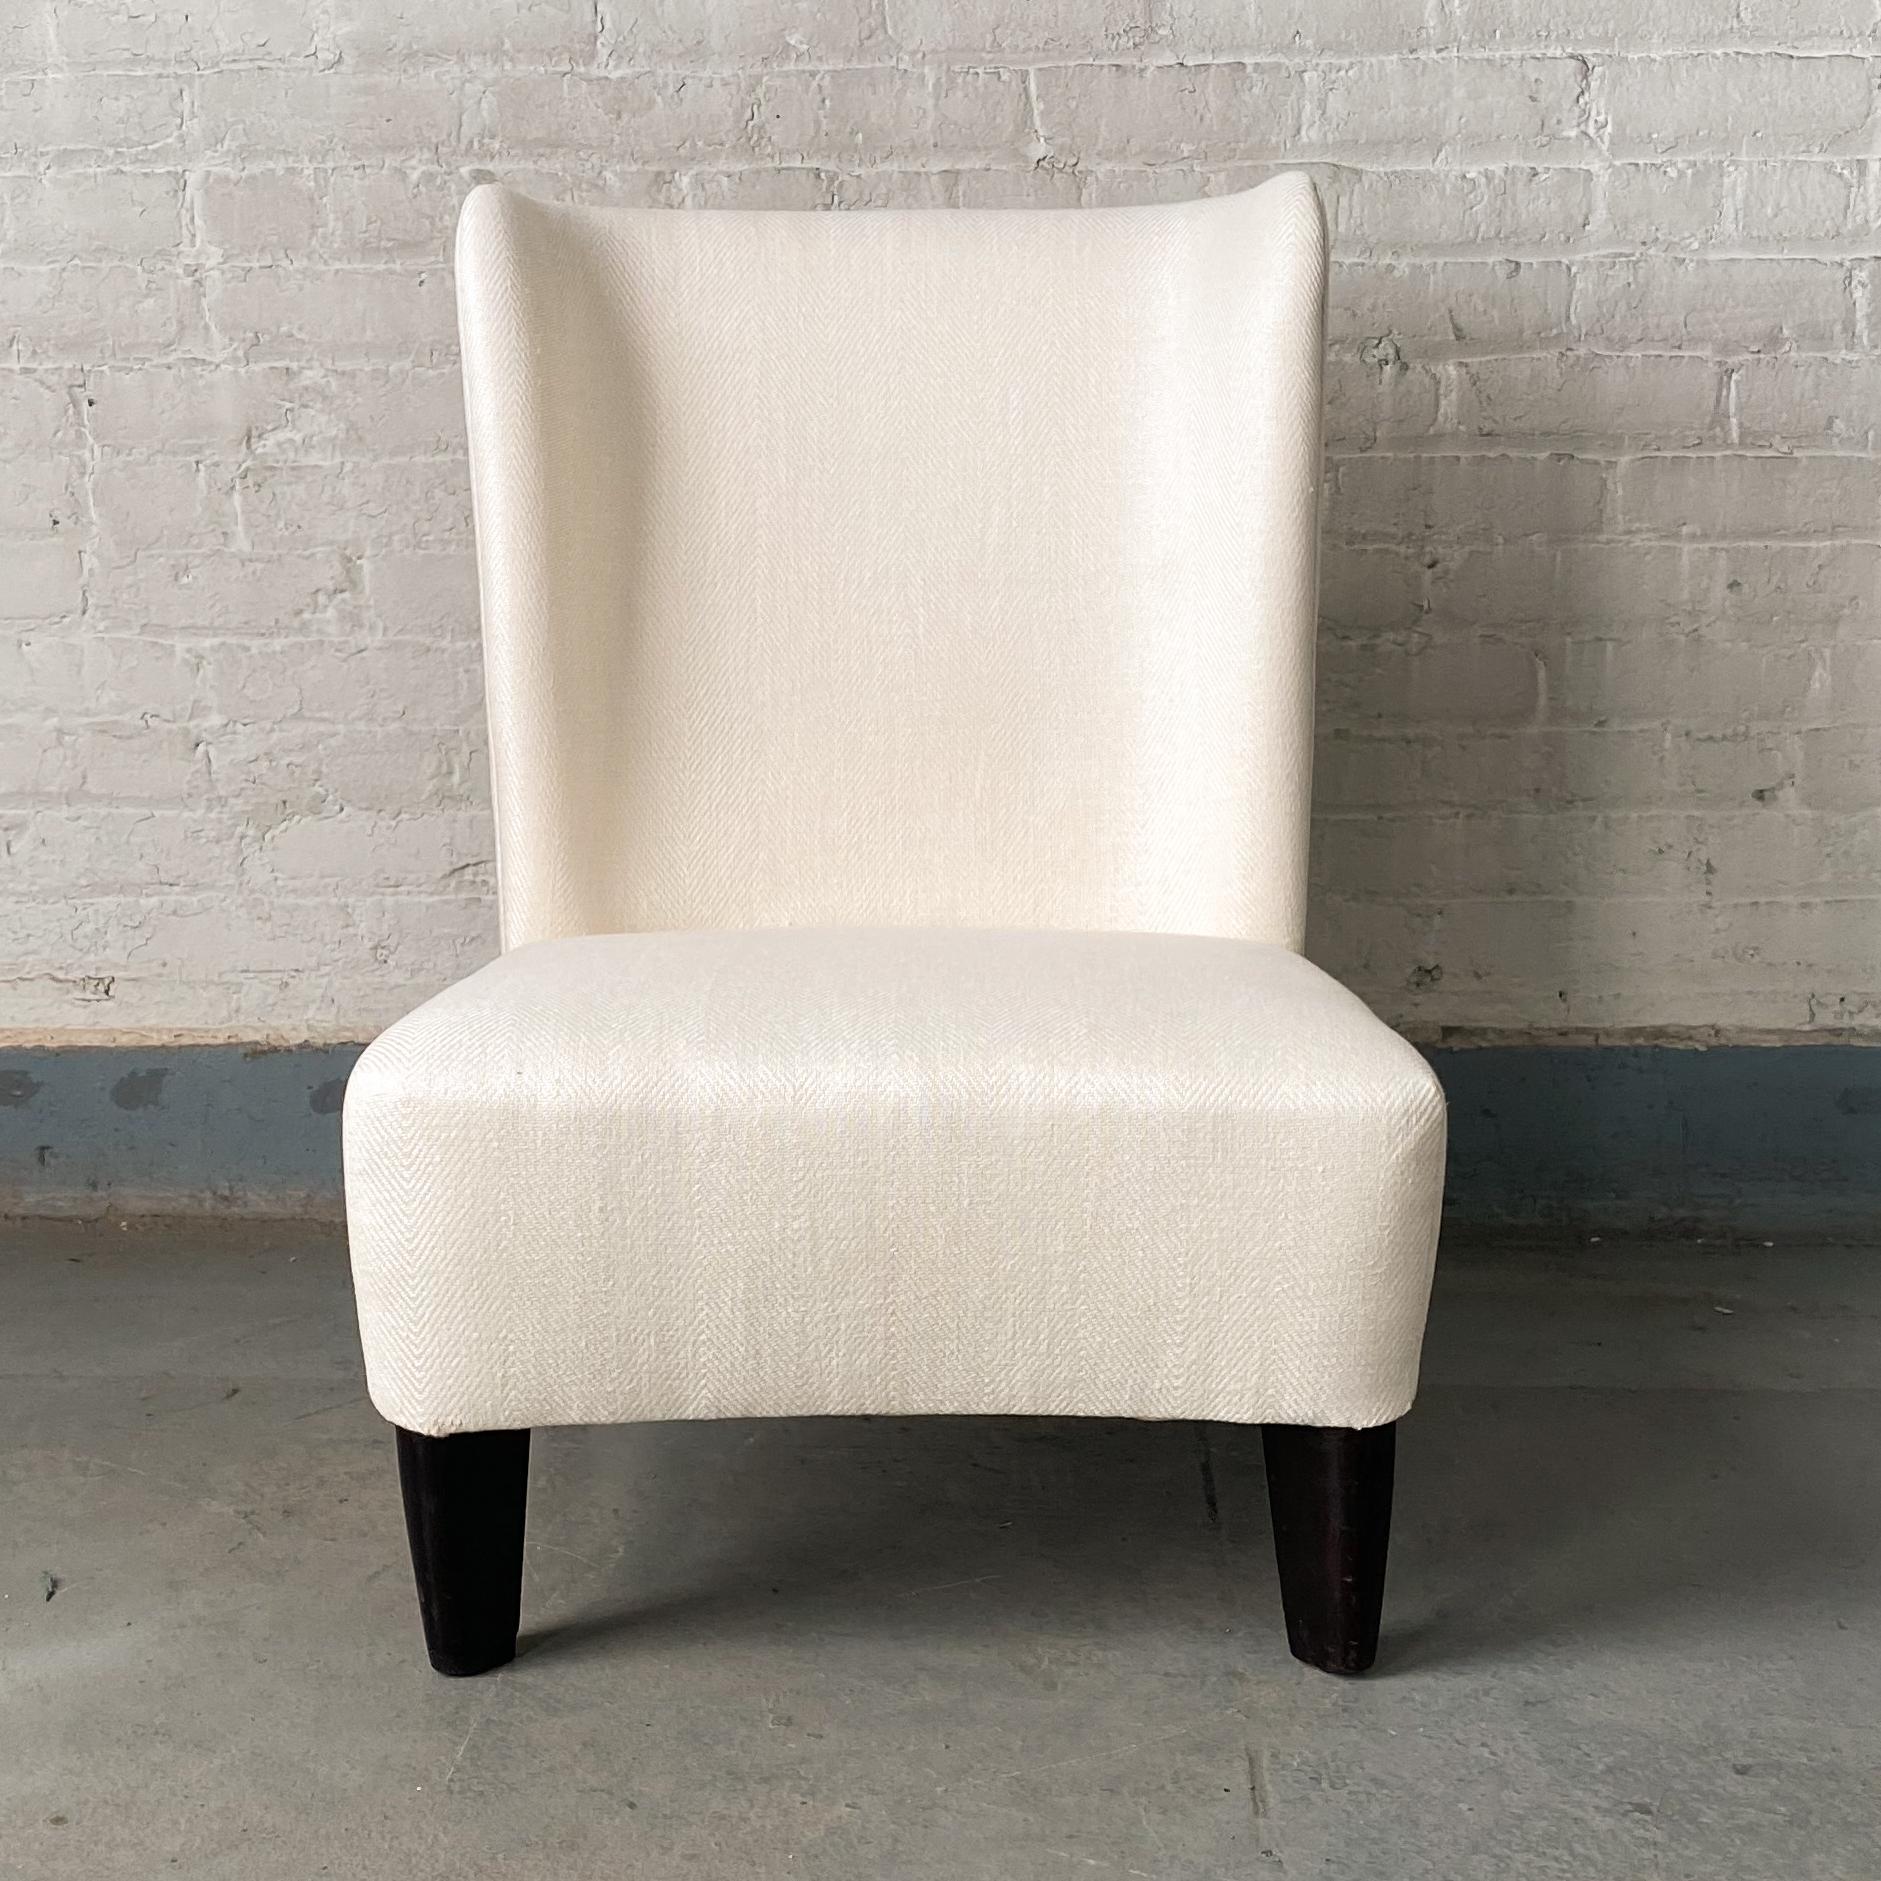 American Edward Wormley Chair for Dunbar Model 2424B For Sale